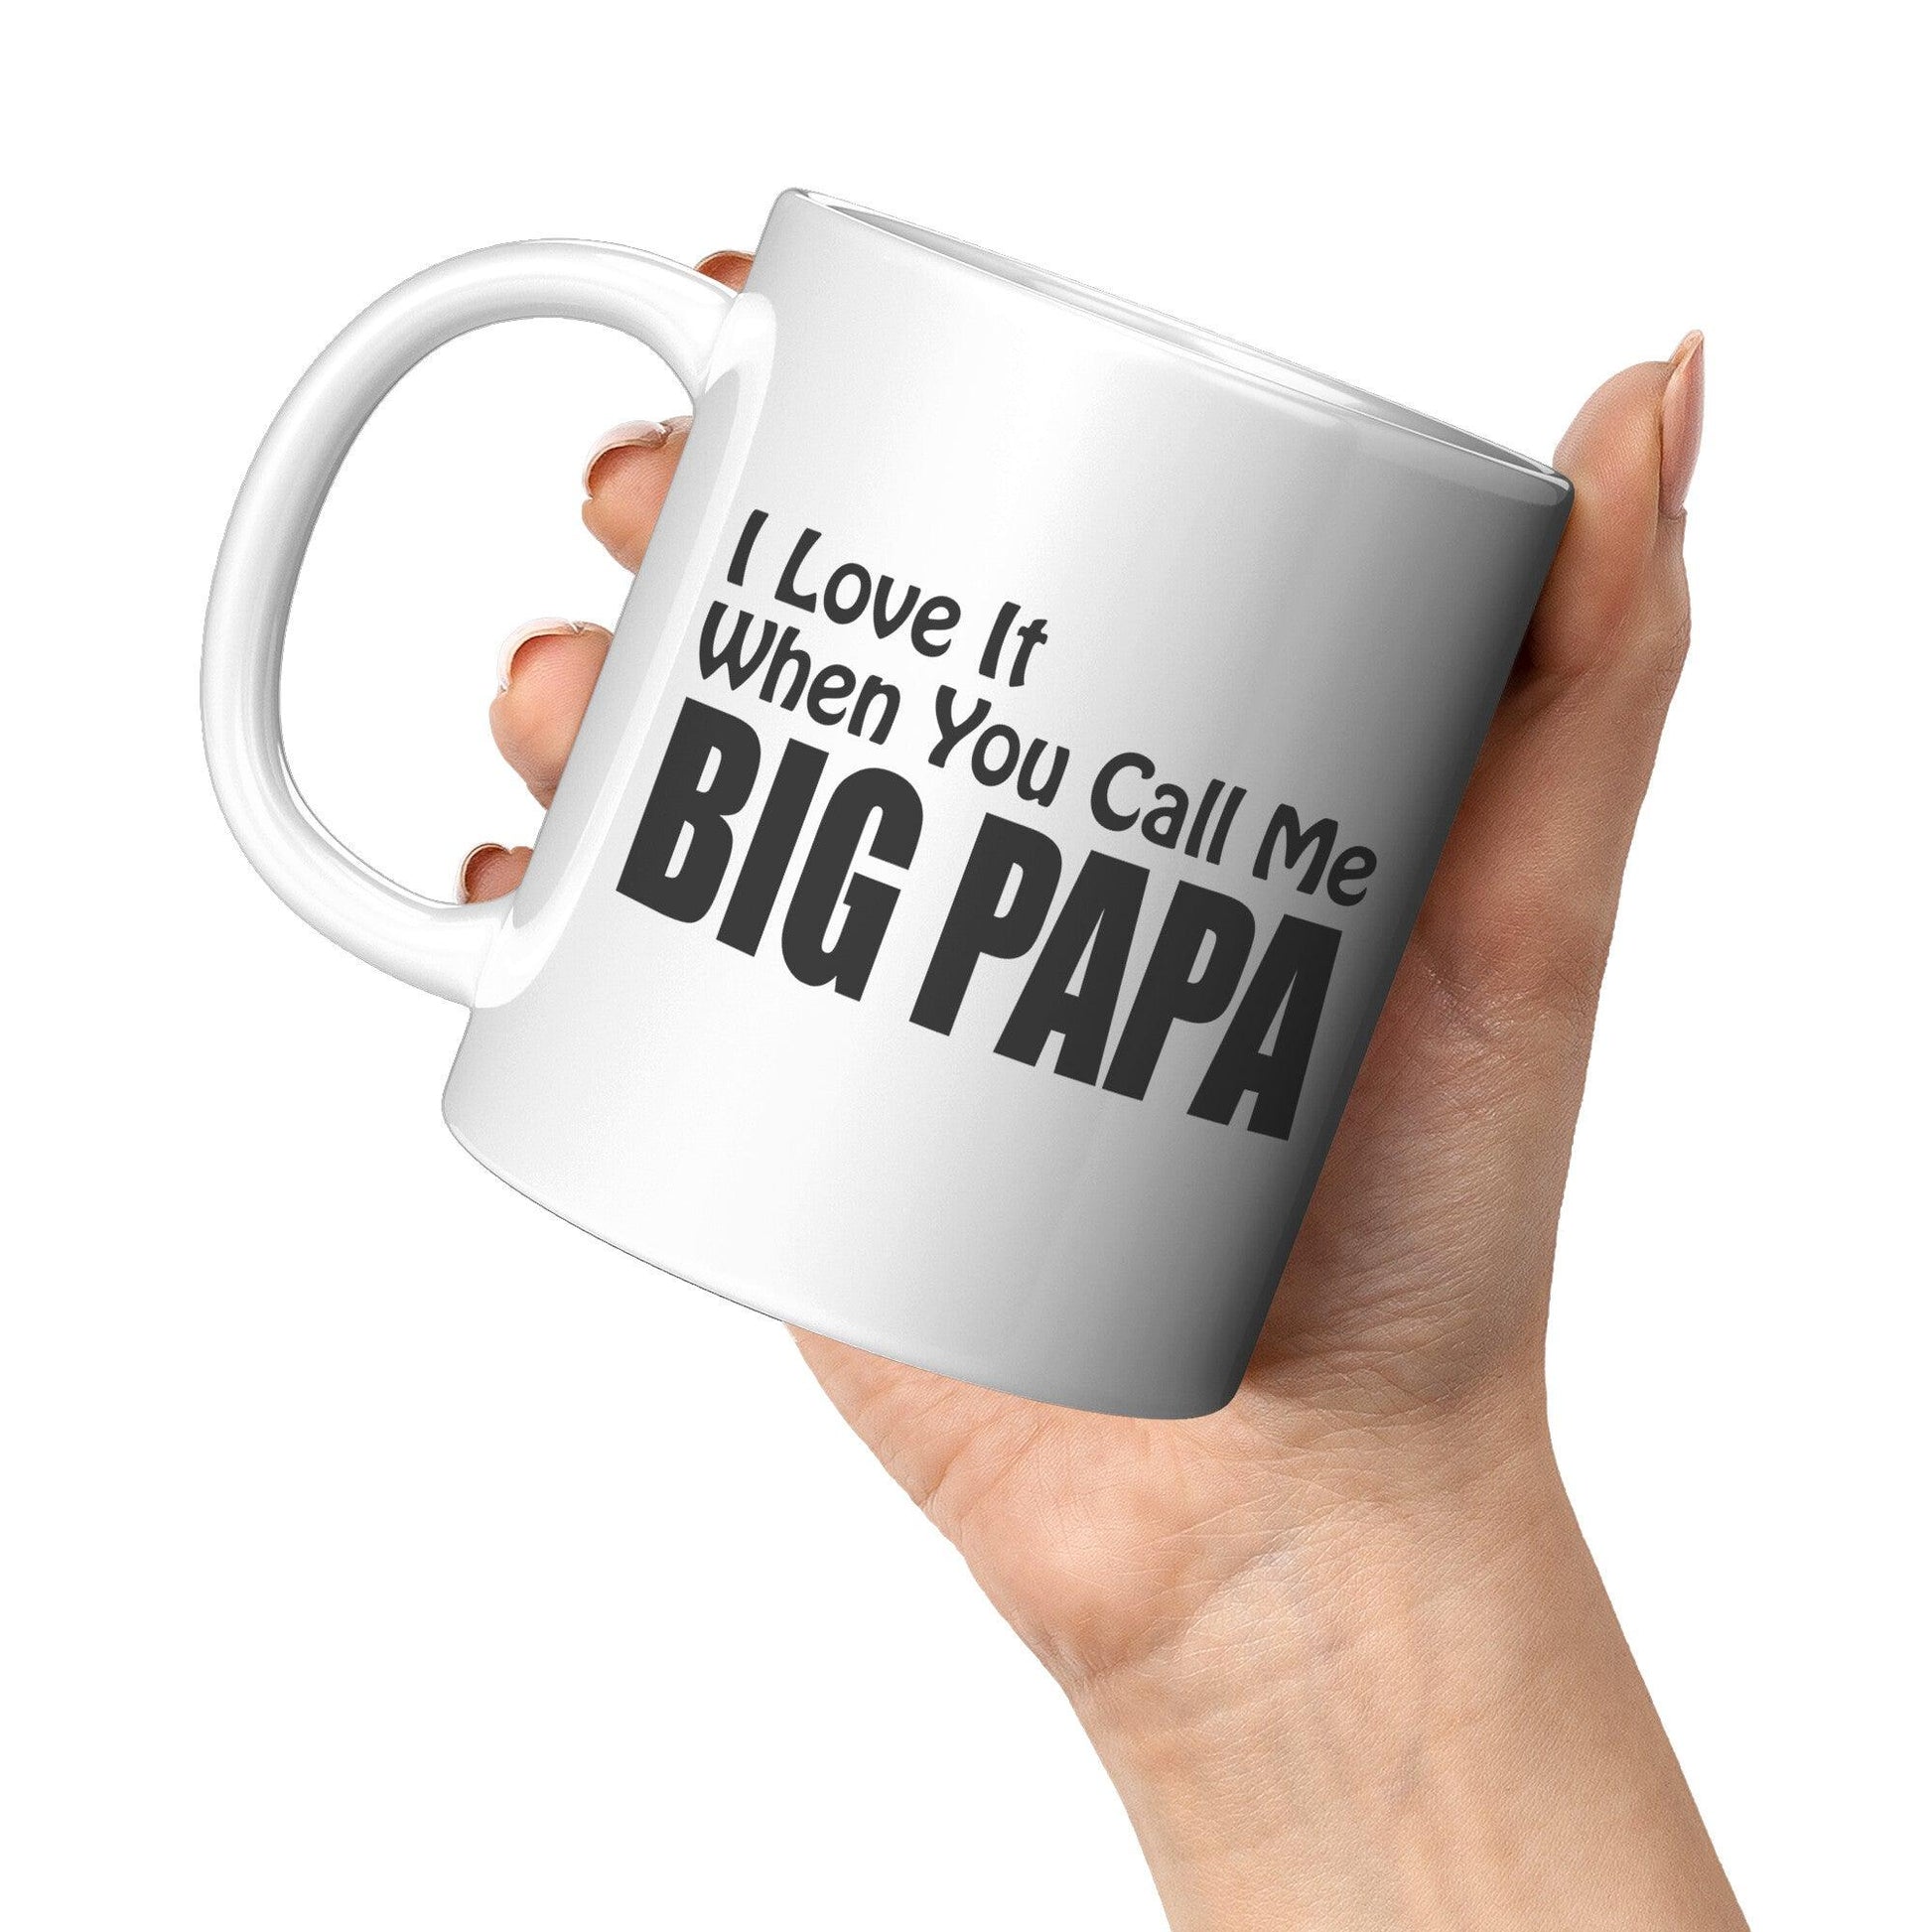 I love It When You Call Me -BIG PAPA White Mug - TheGivenGet